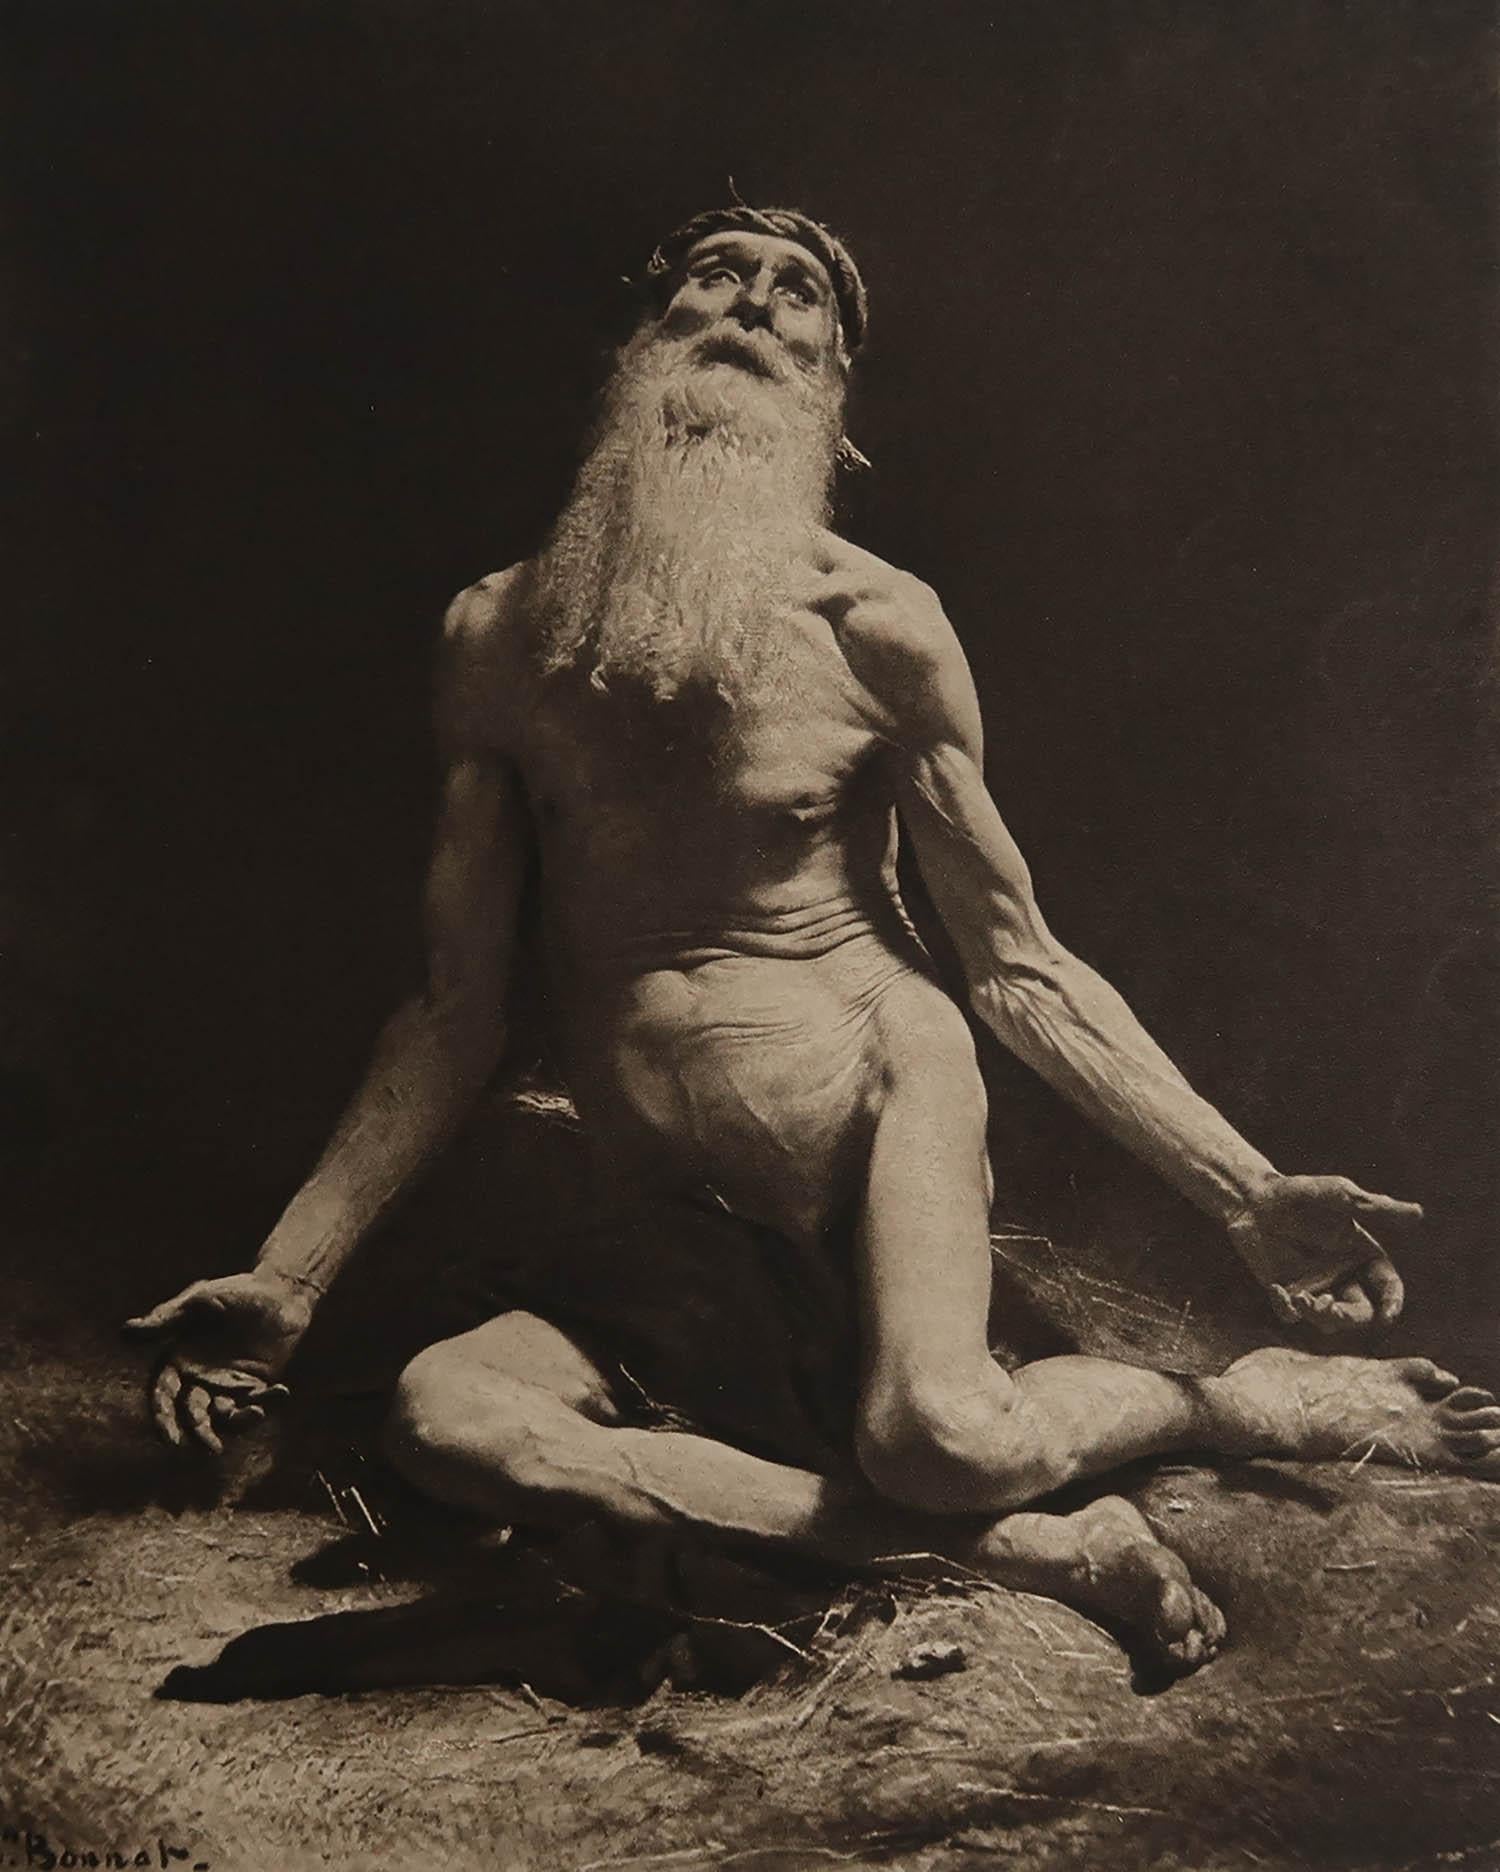 Wunderbares Bild von Hiob

Fototiefdruck

Veröffentlicht C.1900

Ungerahmt